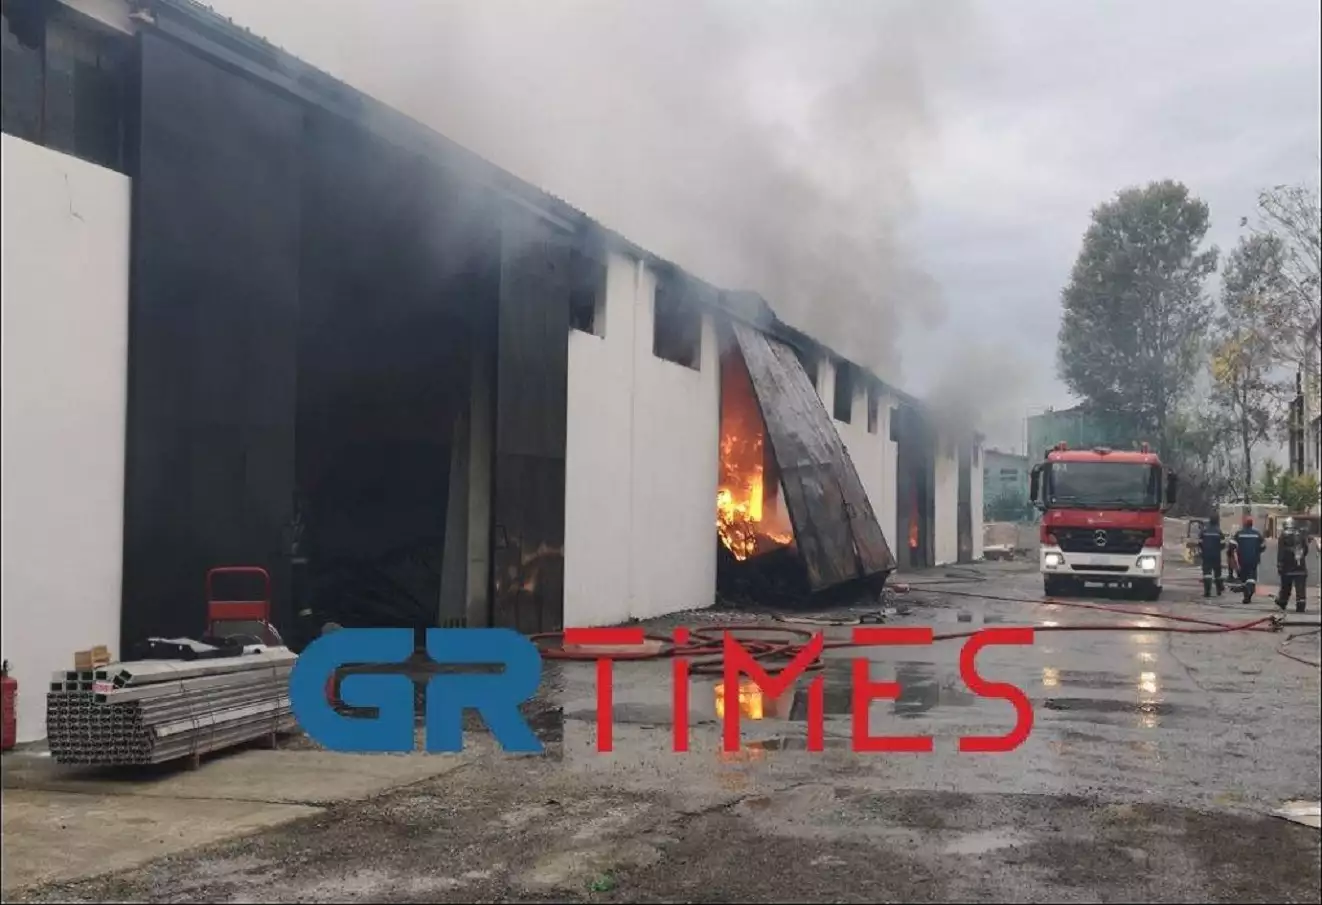 Θεσσαλονίκη: Μαίνεται η φωτιά στην αποθήκη μεταφορικής εταιρίας στο Καλοχώρι (φωτο-βίντεο) (upd)